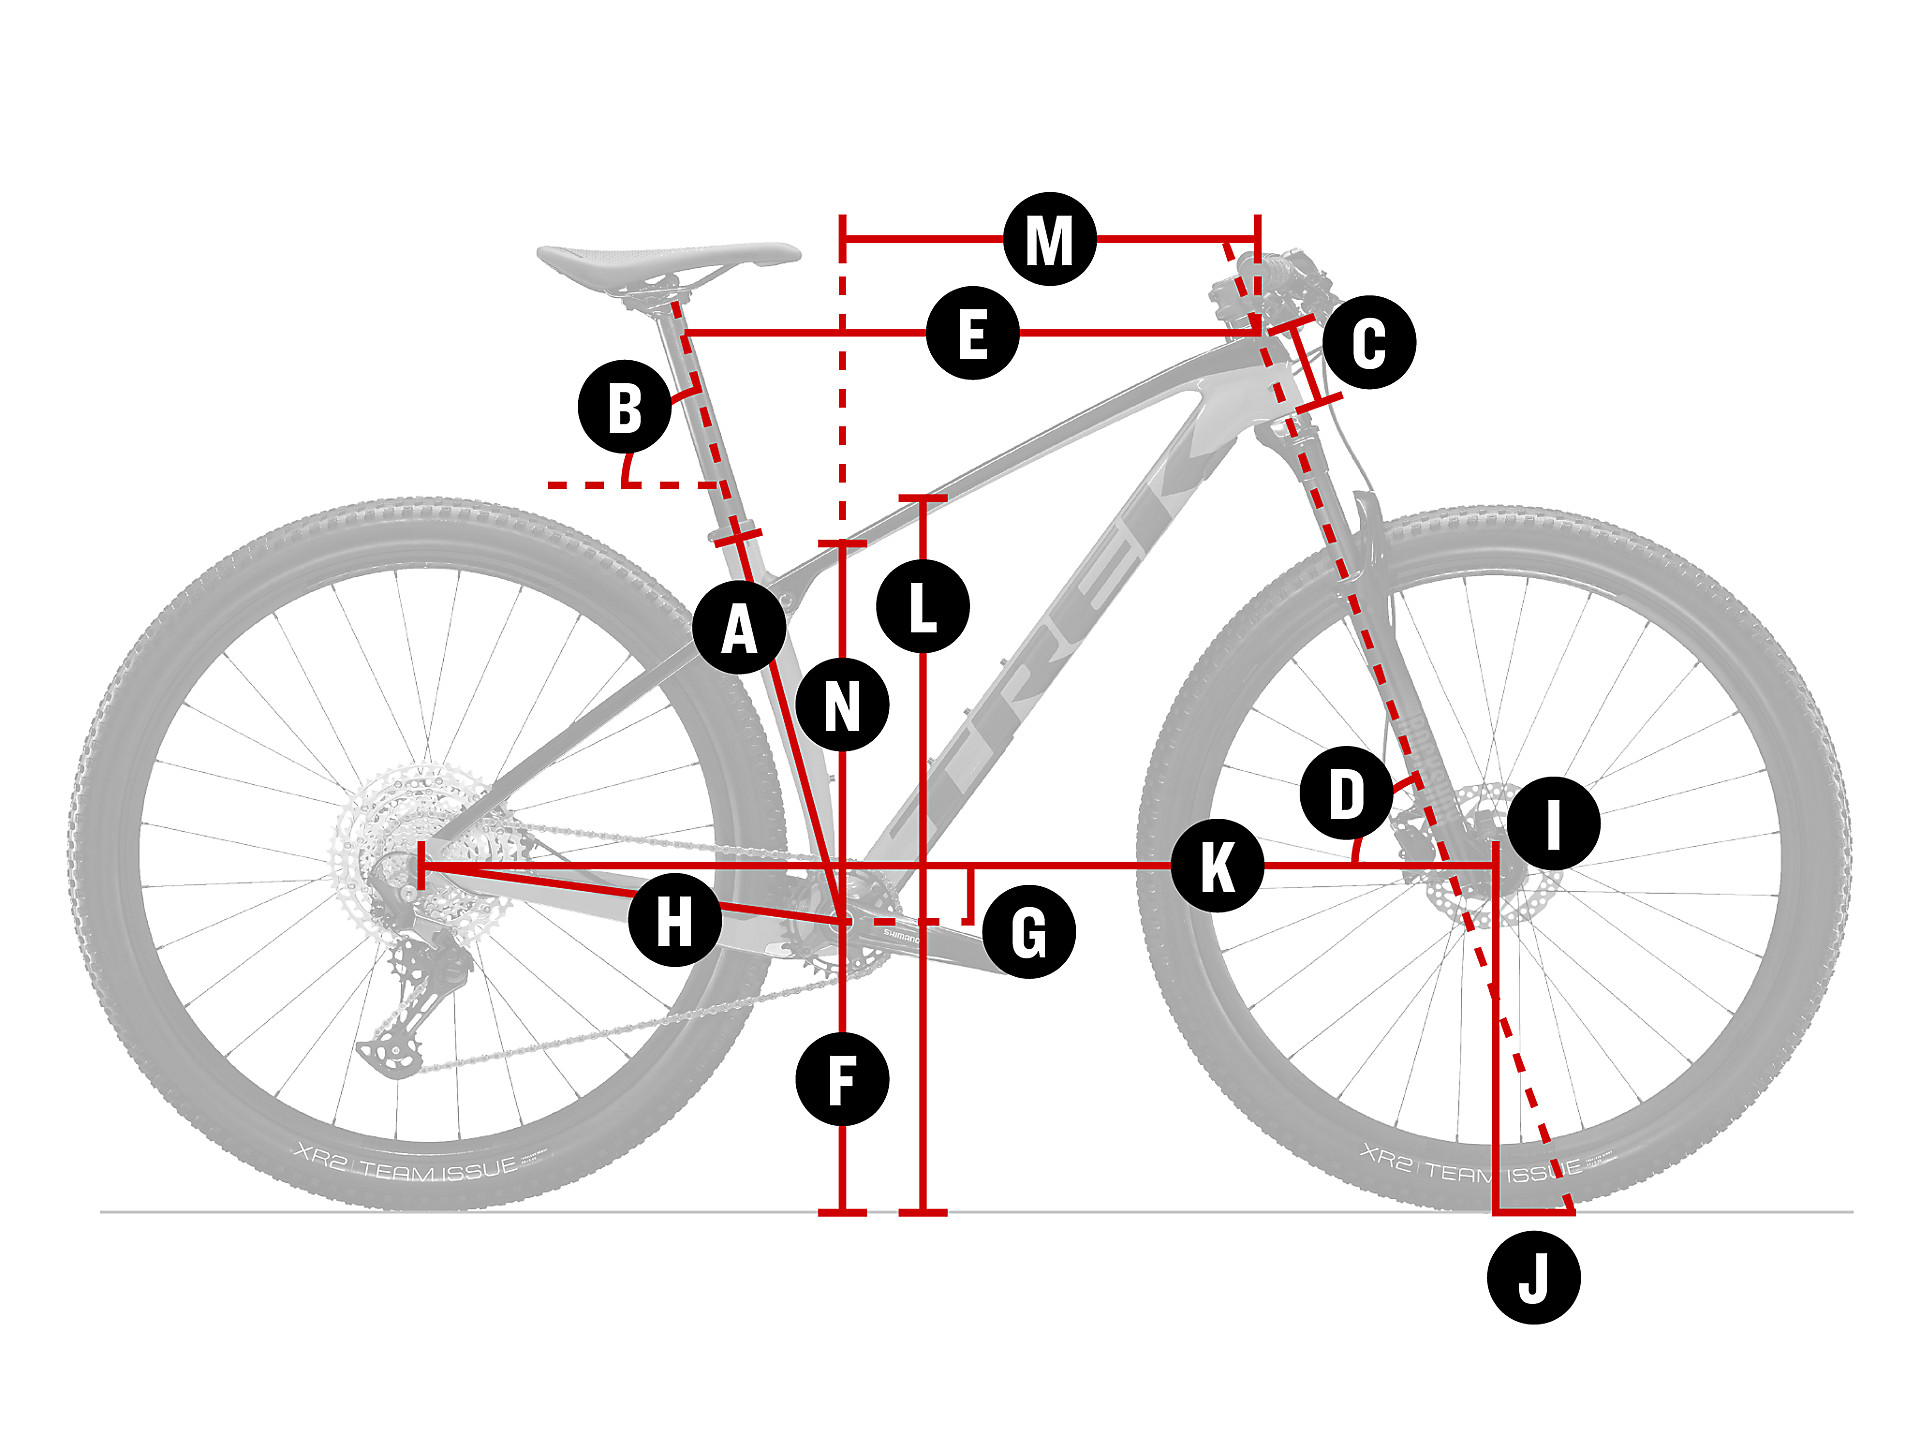 Indringing Evaluatie rechtdoor Procaliber 9.6 | Trek Bikes